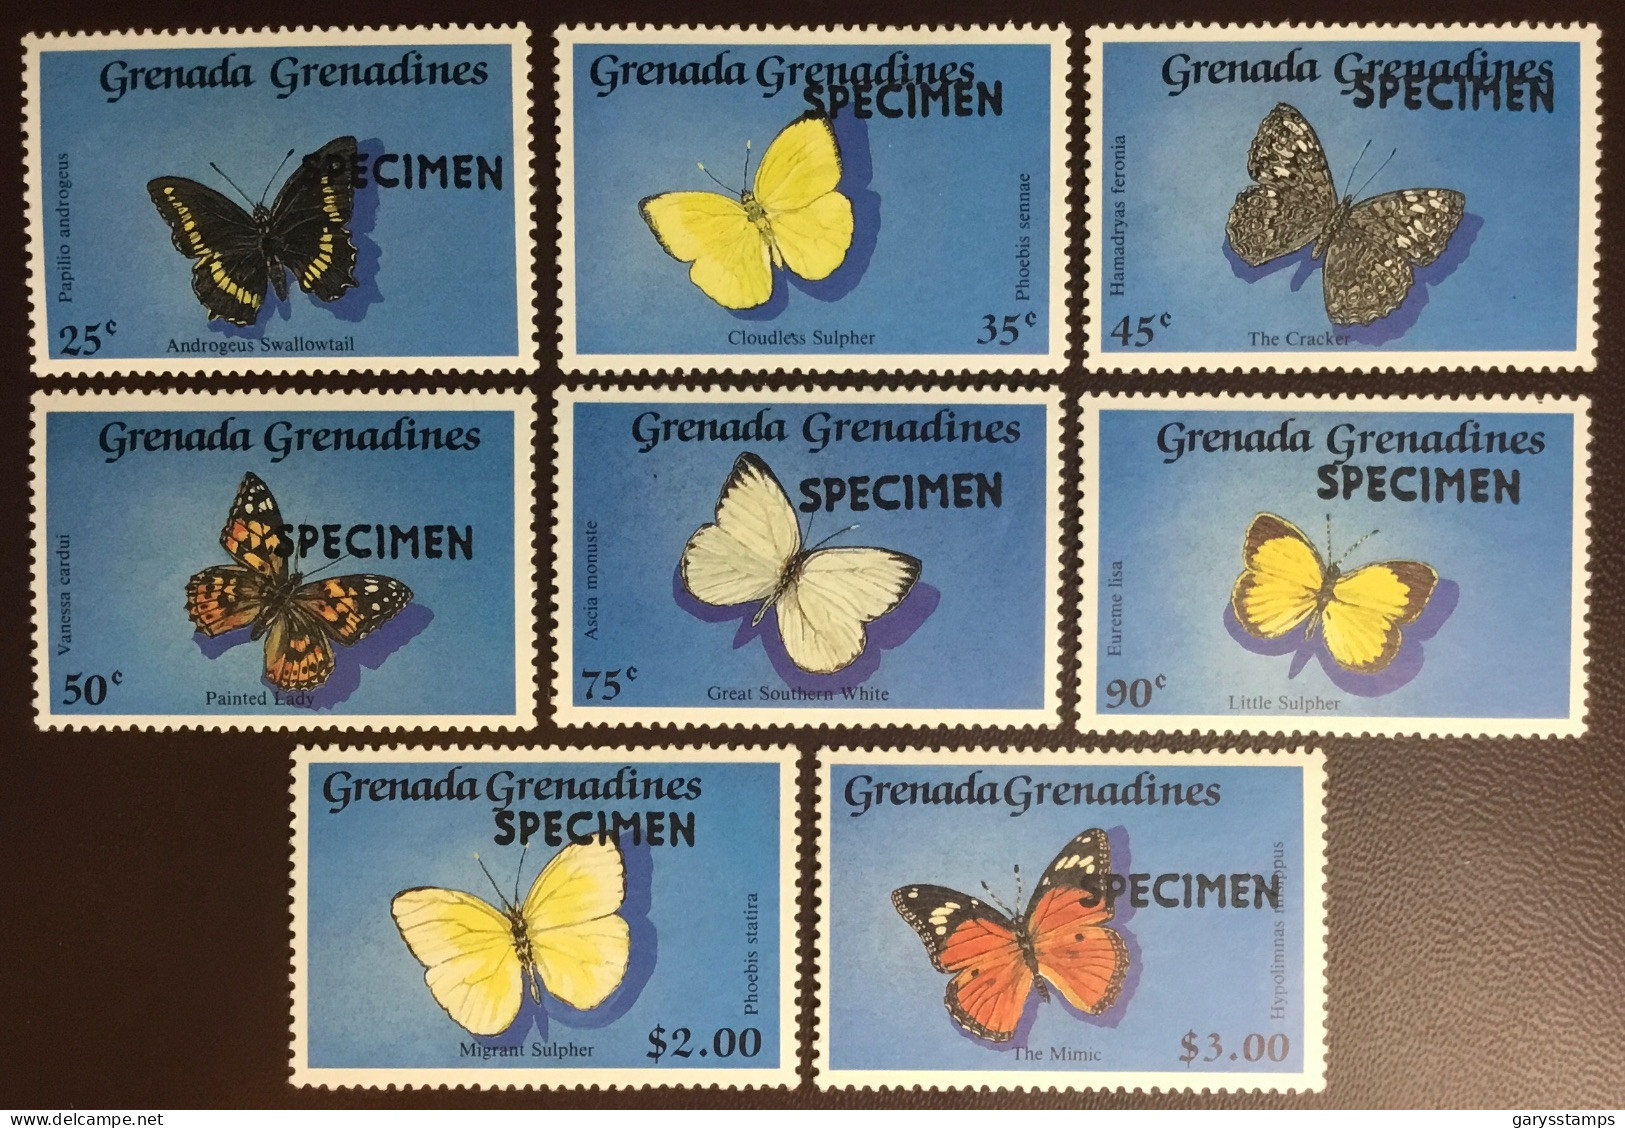 Grenada Grenadines 1989 Butterflies Specimen MNH - Vlinders